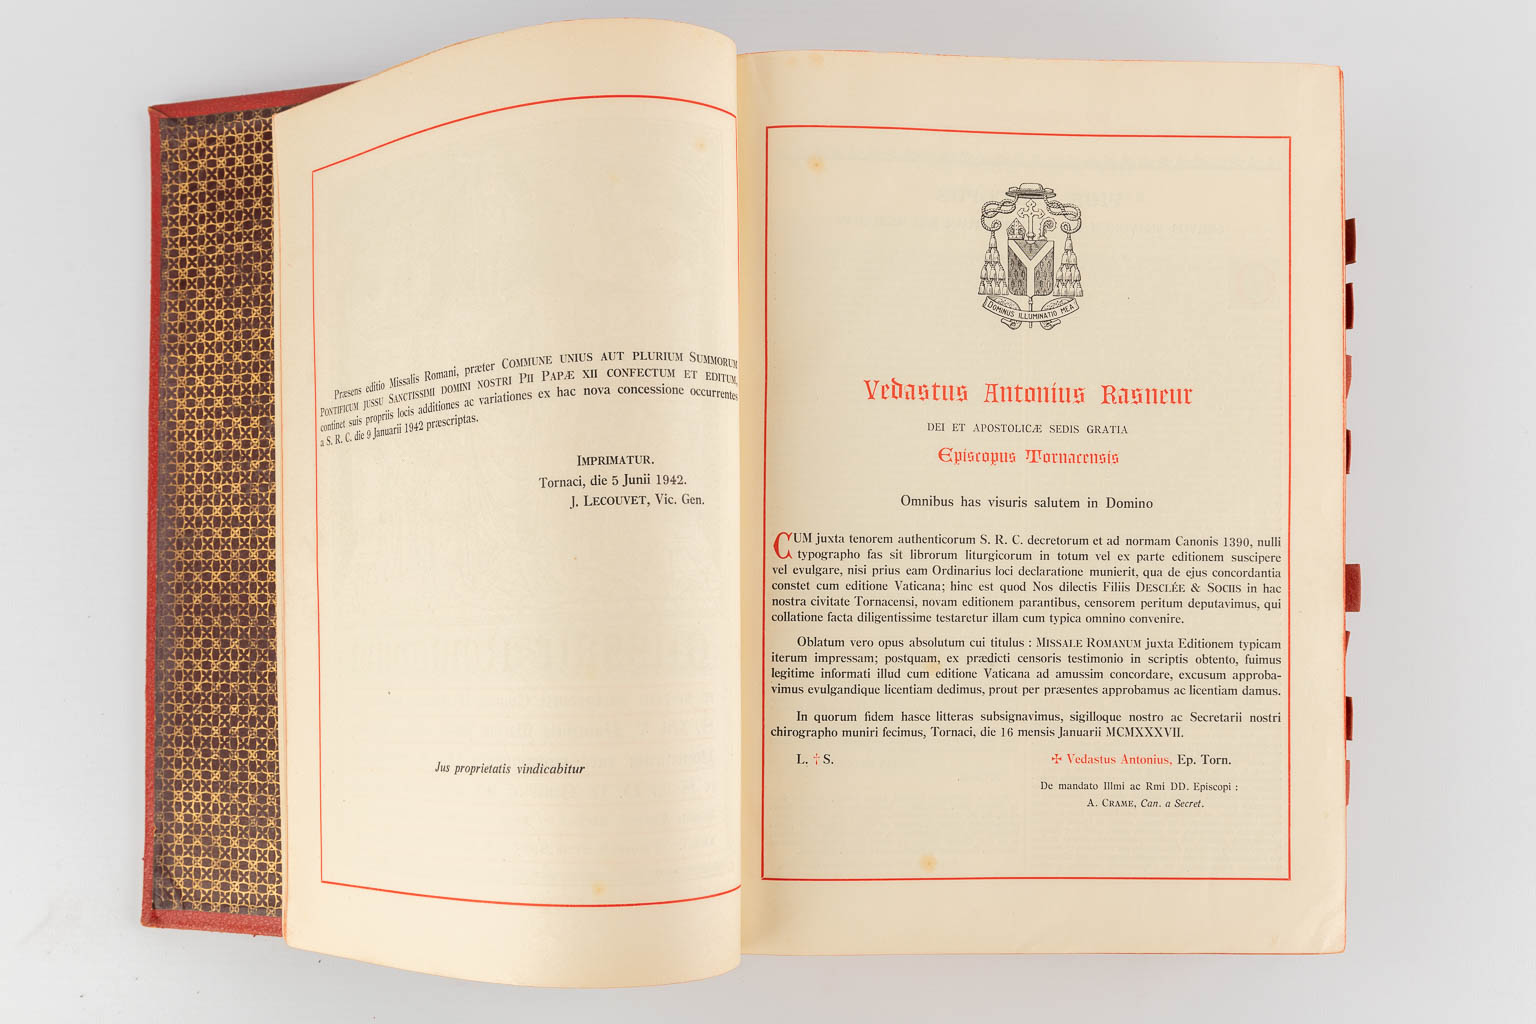 Three Missale Romanum books, 20th C. (D:6 x W:24 x H:32 cm)